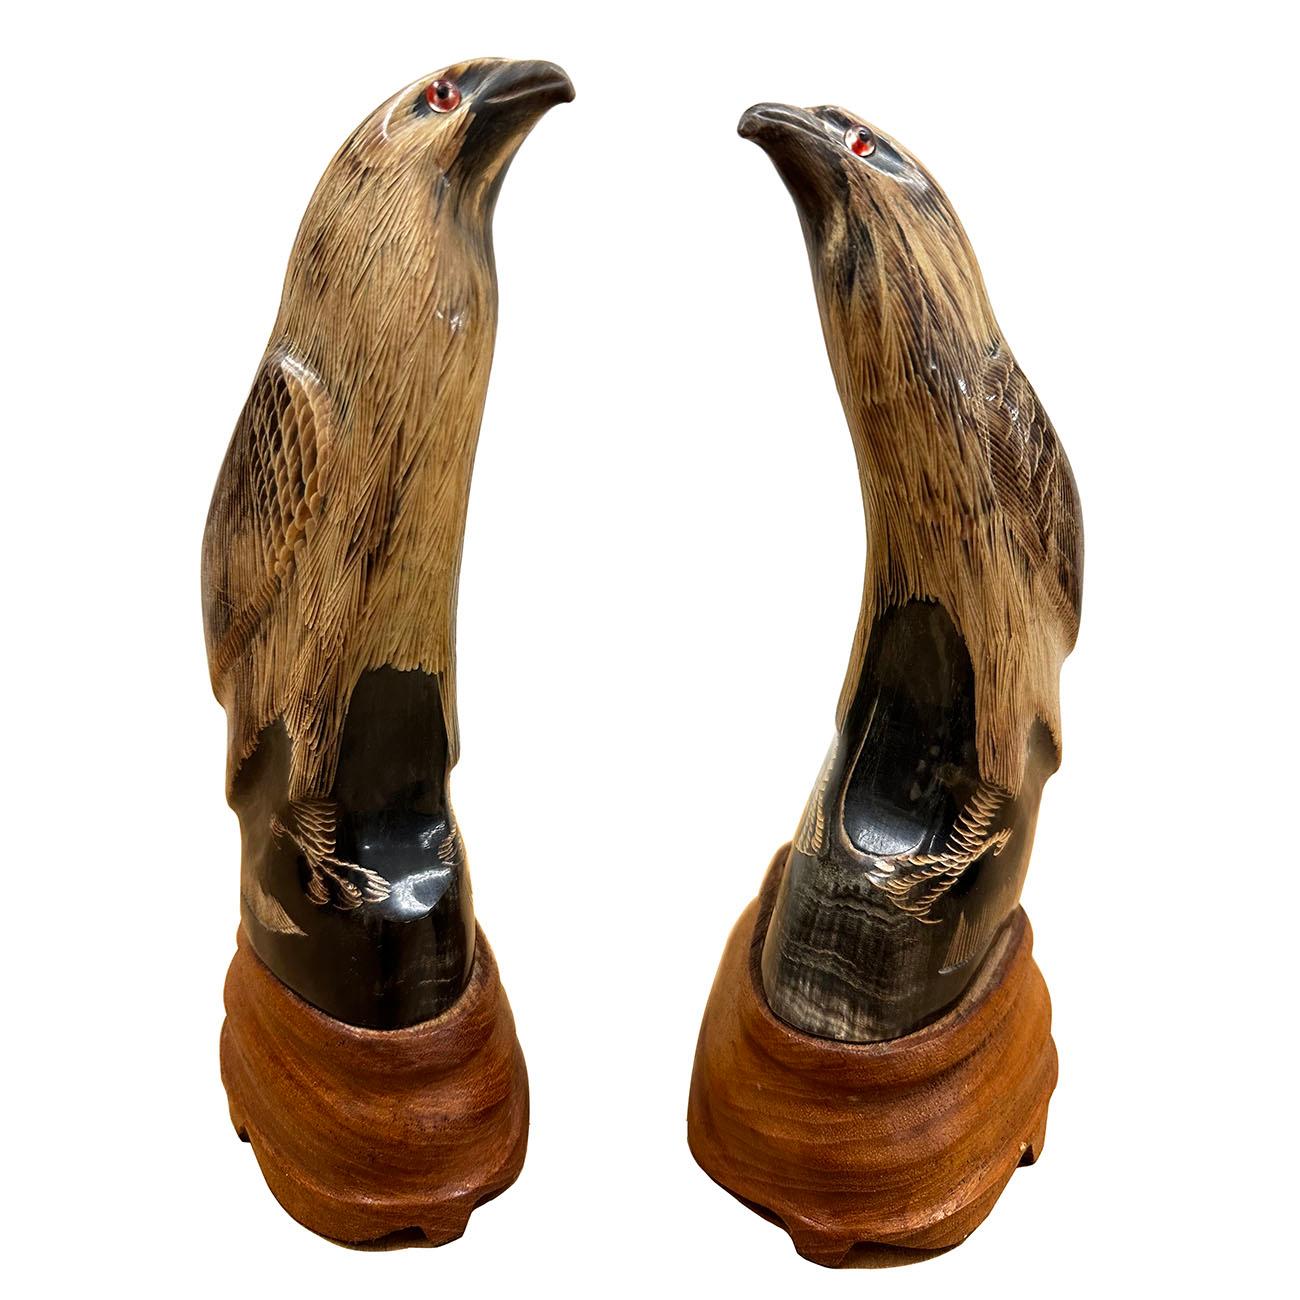 Dieses Paar chinesischer Adler-Skulpturen aus Büffelhorn ist zu 100 Prozent handgefertigt und aus Büffelhorn geschnitzt. Im alten China stand der Adler für Tapferkeit und Weisheit. Er ist auch ein Symbol für einen Helden. Schauen Sie sich die